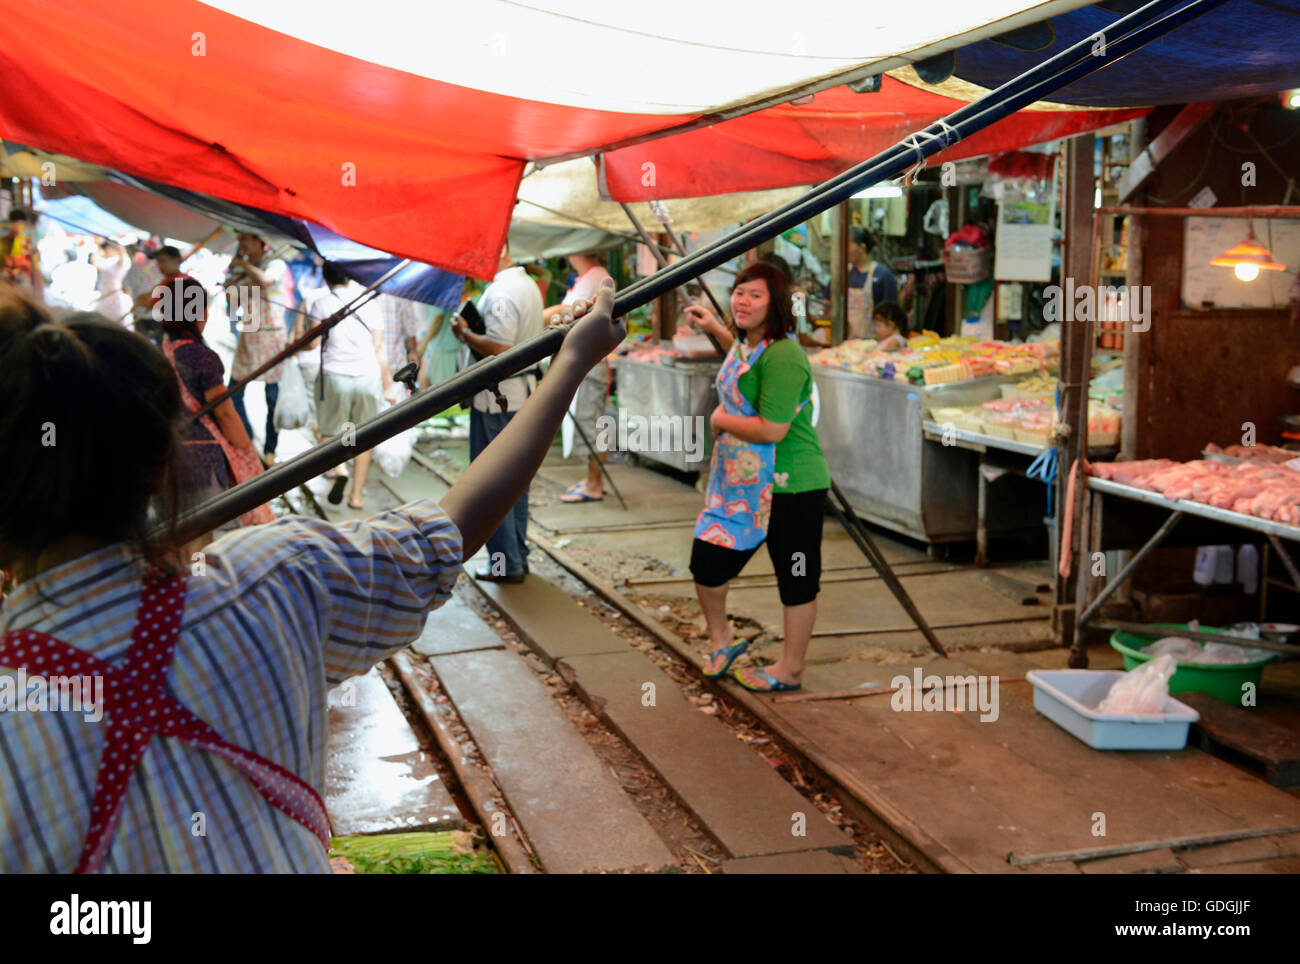 Der Maeklong Railway Markt beim Maeklong Bahnhof ausserhalb der Hauptstadt Bangkok von Thailand in Suedostasien. Stock Photo